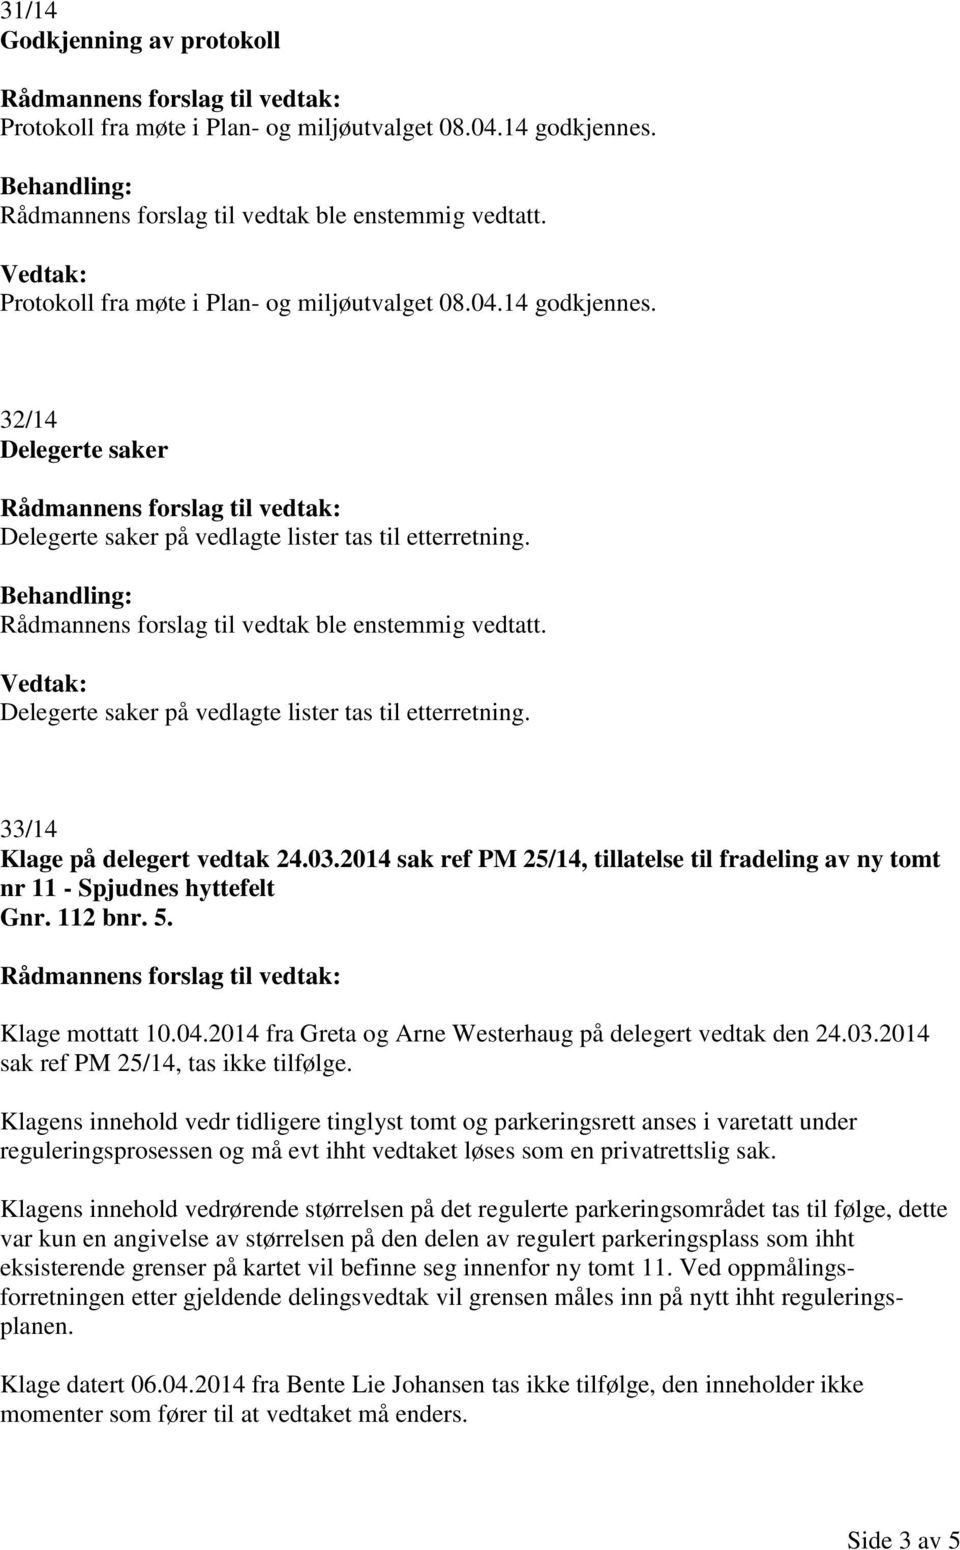 Klage mottatt 10.04.2014 fra Greta og Arne Westerhaug på delegert vedtak den 24.03.2014 sak ref PM 25/14, tas ikke tilfølge.